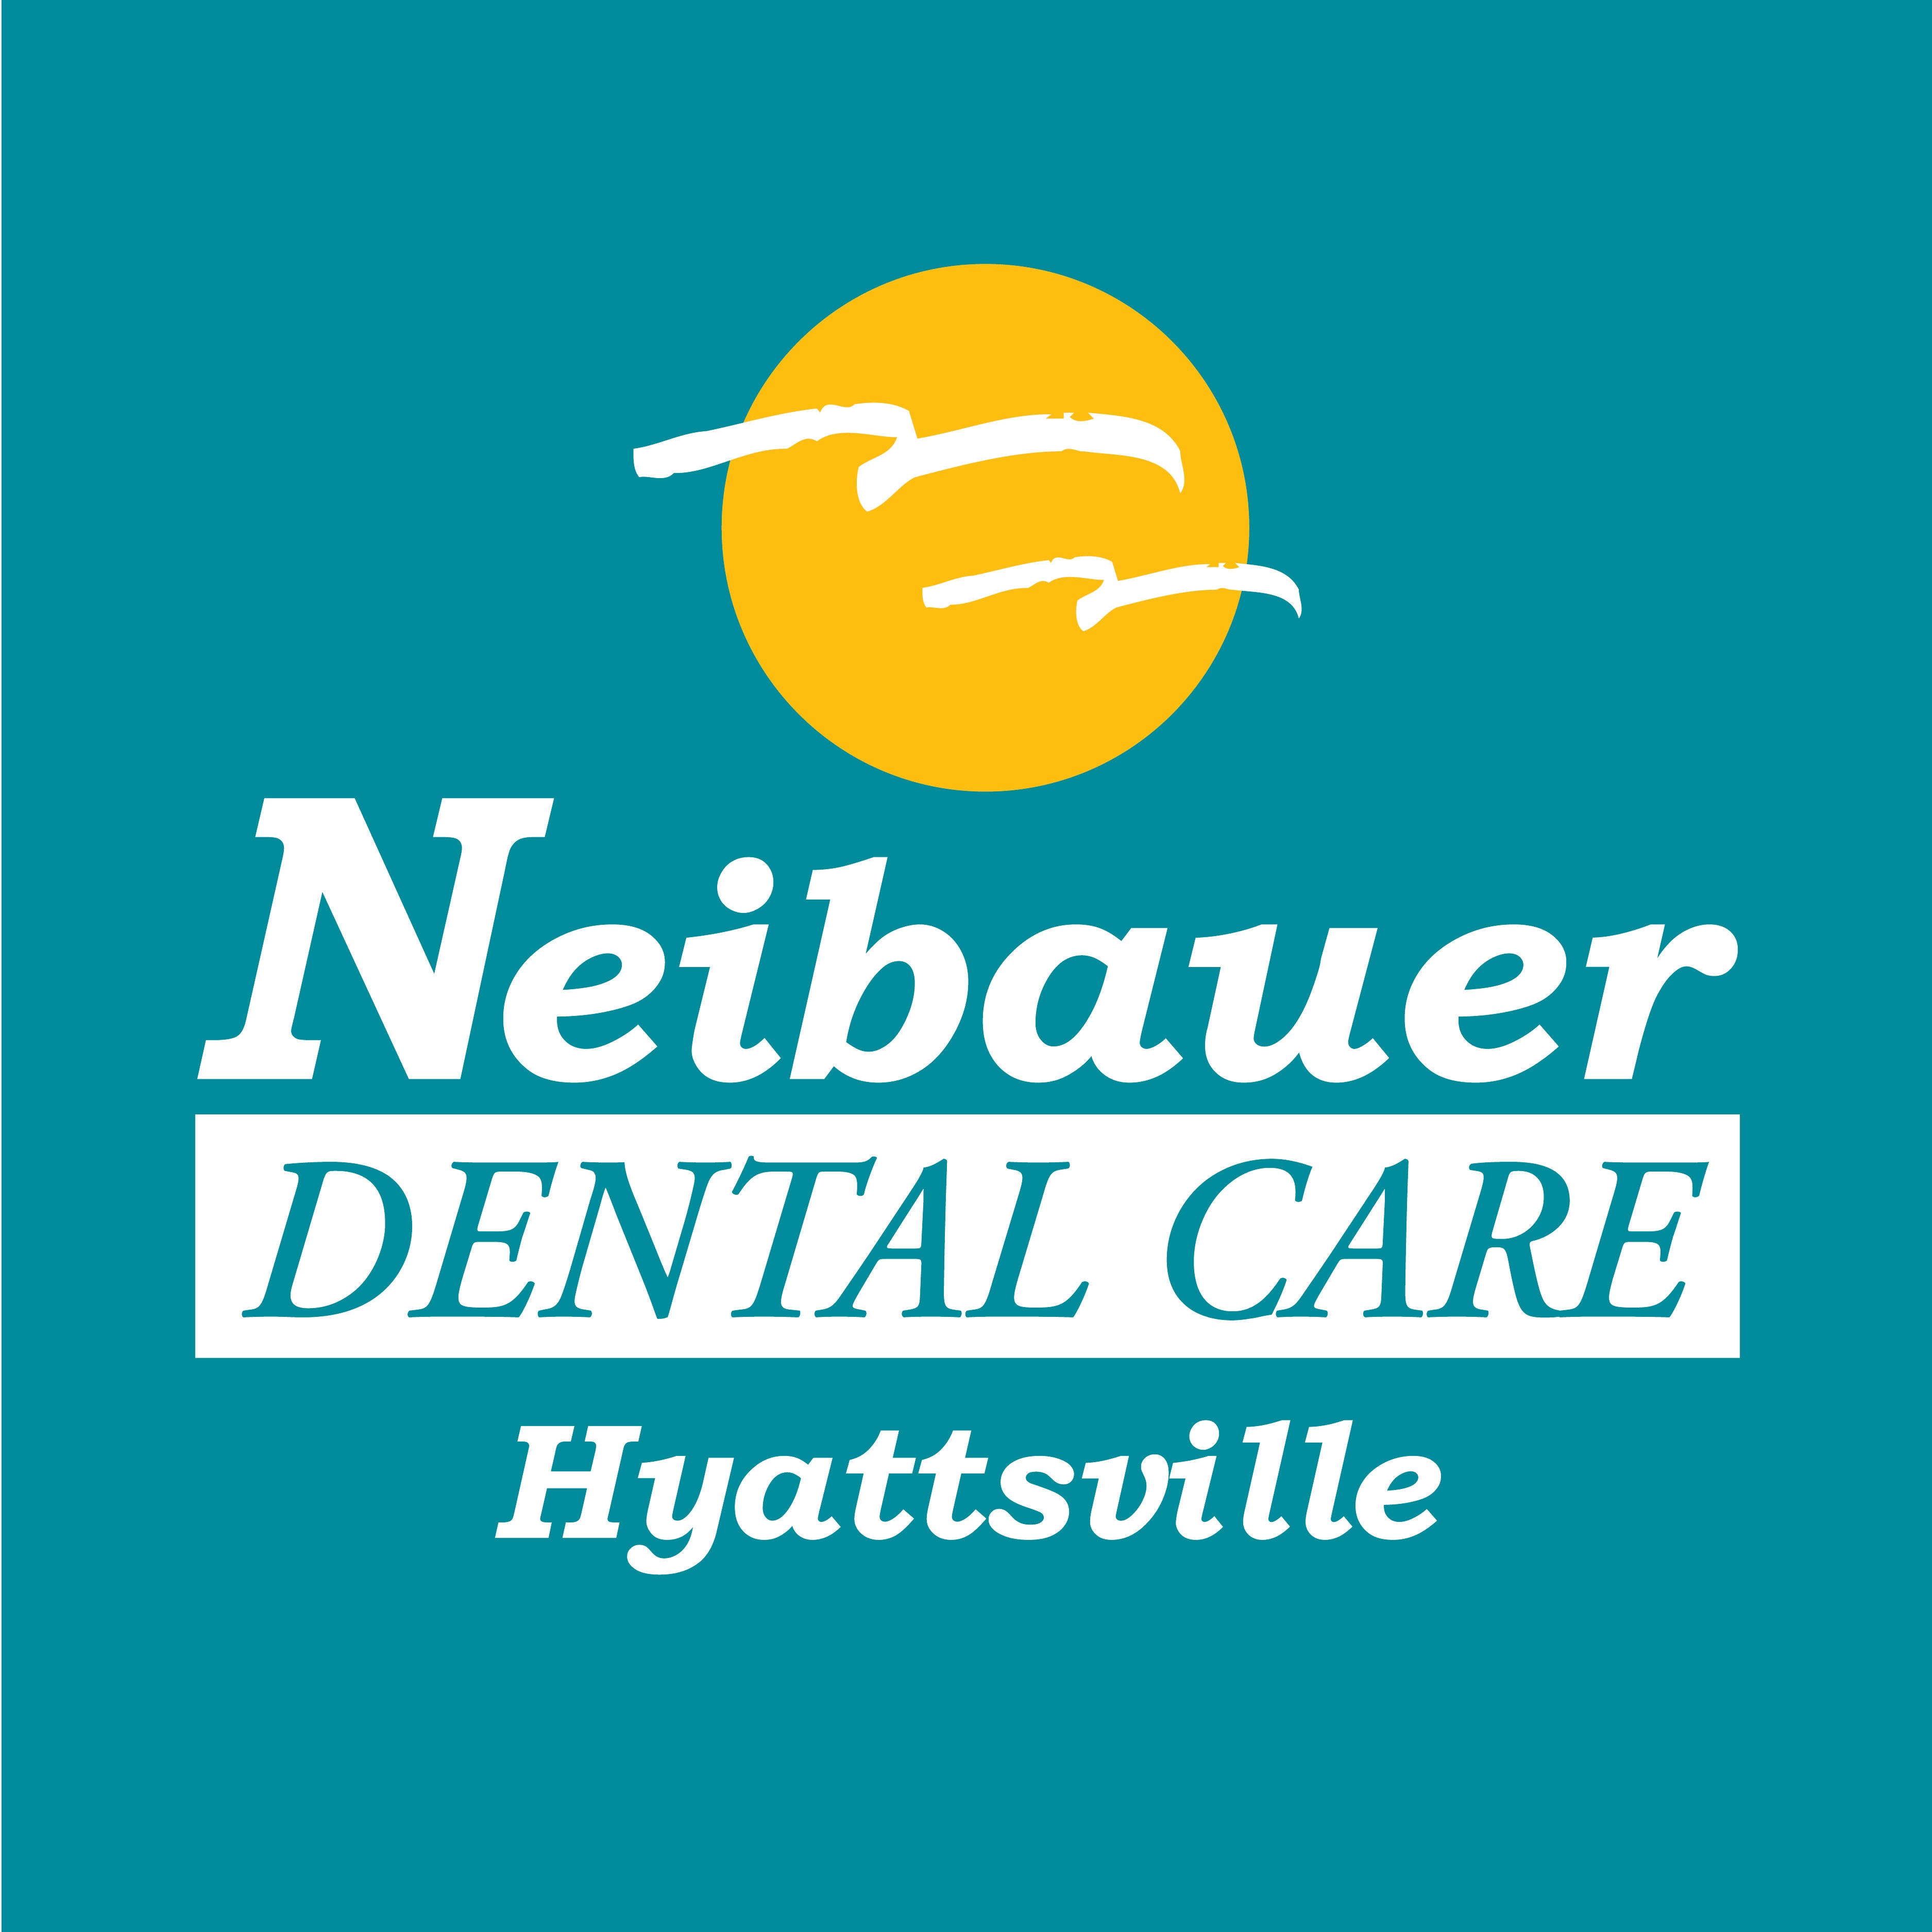 Neibauer Dental Care Logo